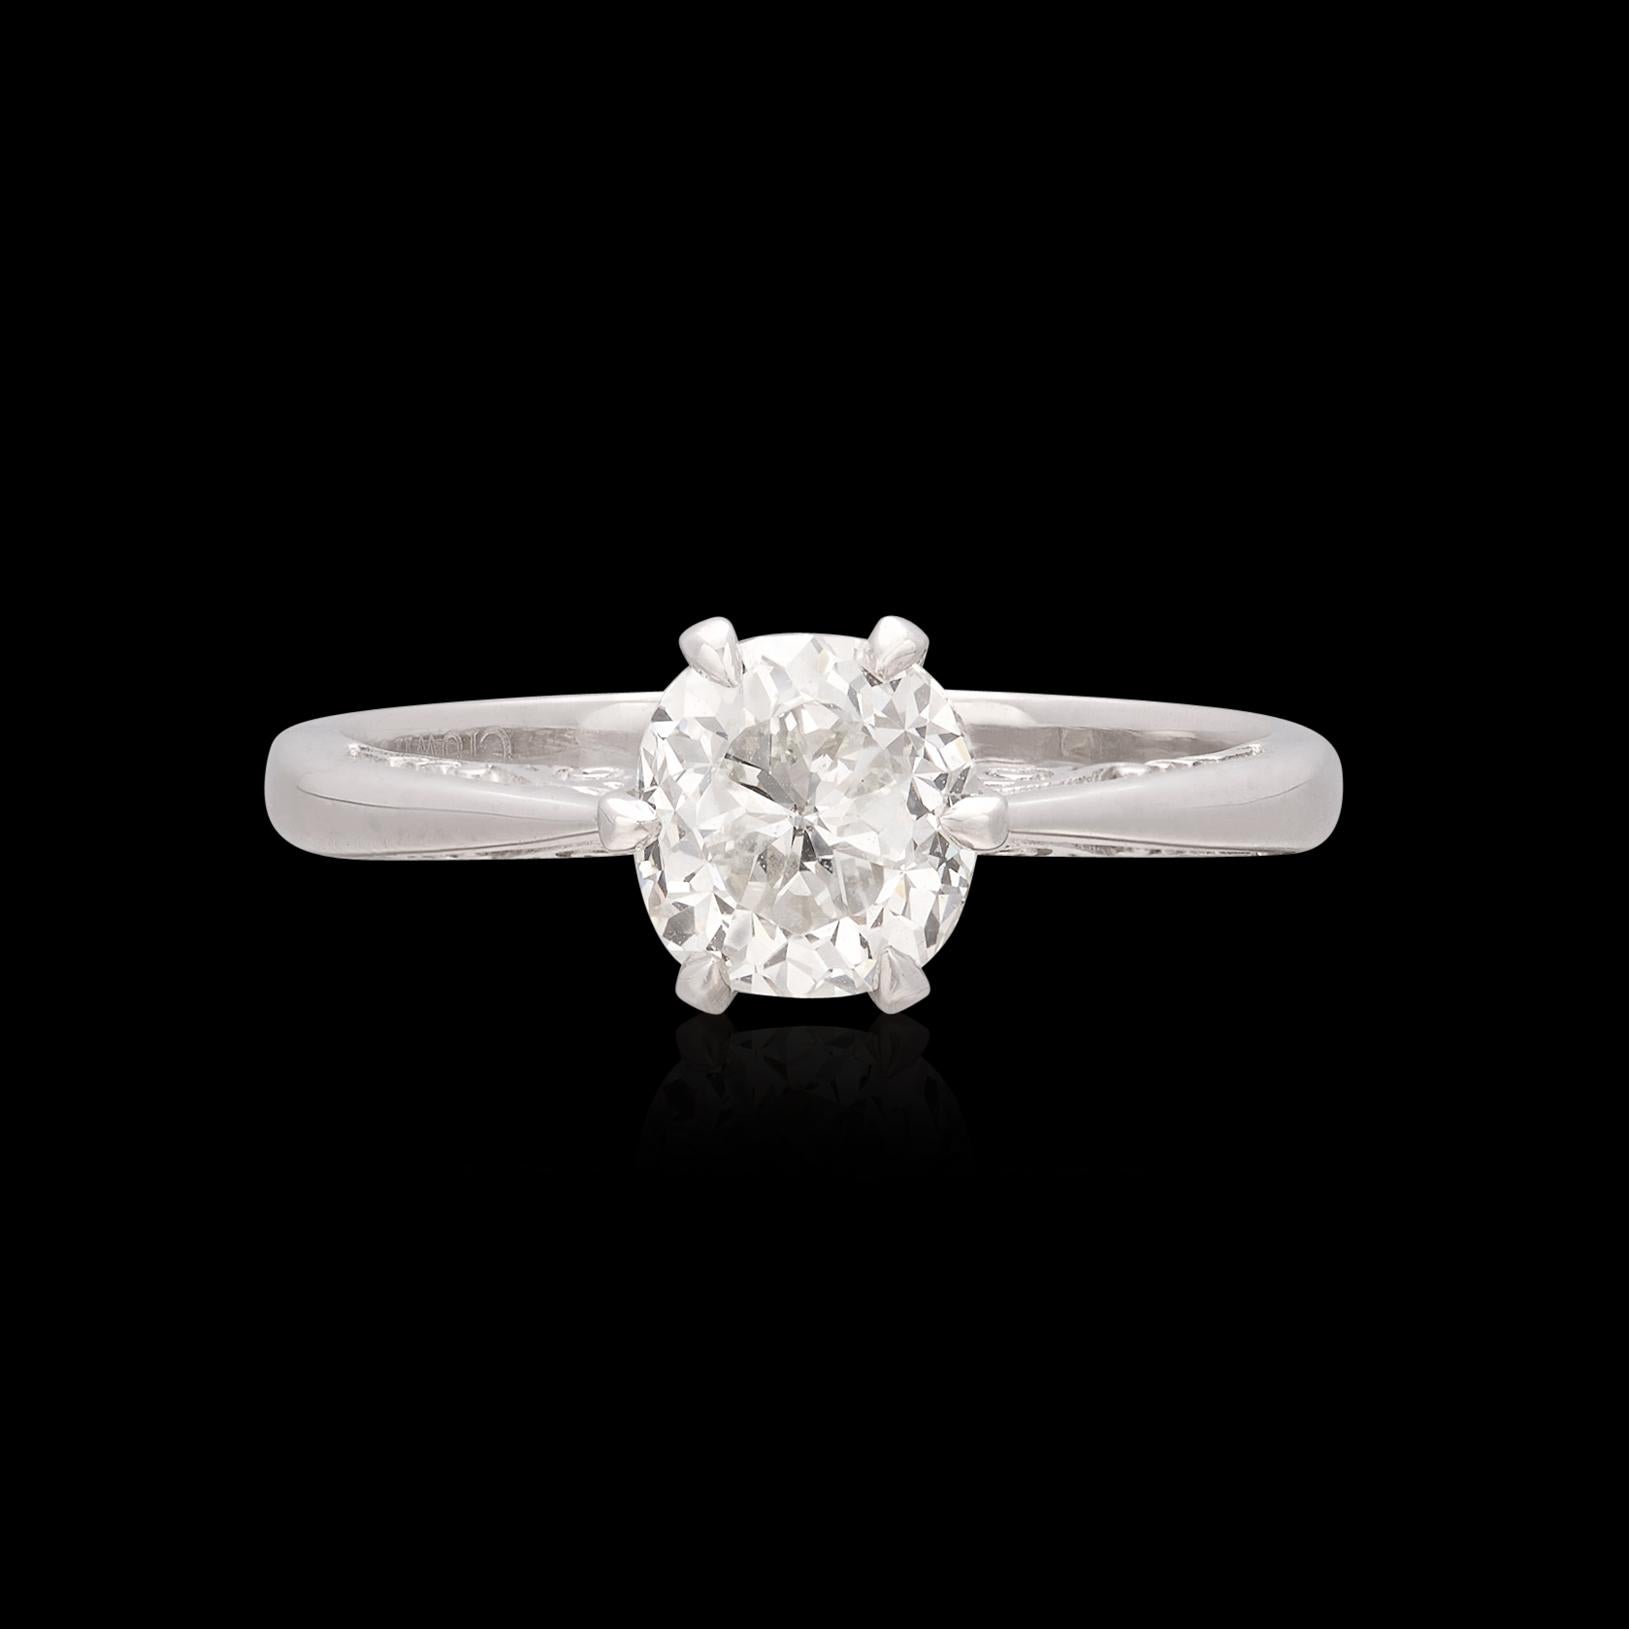 Klassische Eleganz mit einem prächtigen Mittelstein. Dieses Platin  der von der Tulpe inspirierte Ring ist mit einem außergewöhnlichen Diamanten von 1,33 Karat mit GIA-Gütesiegel als Herzstück ausgestattet. Der ebenso seltene wie schöne Mittelstein